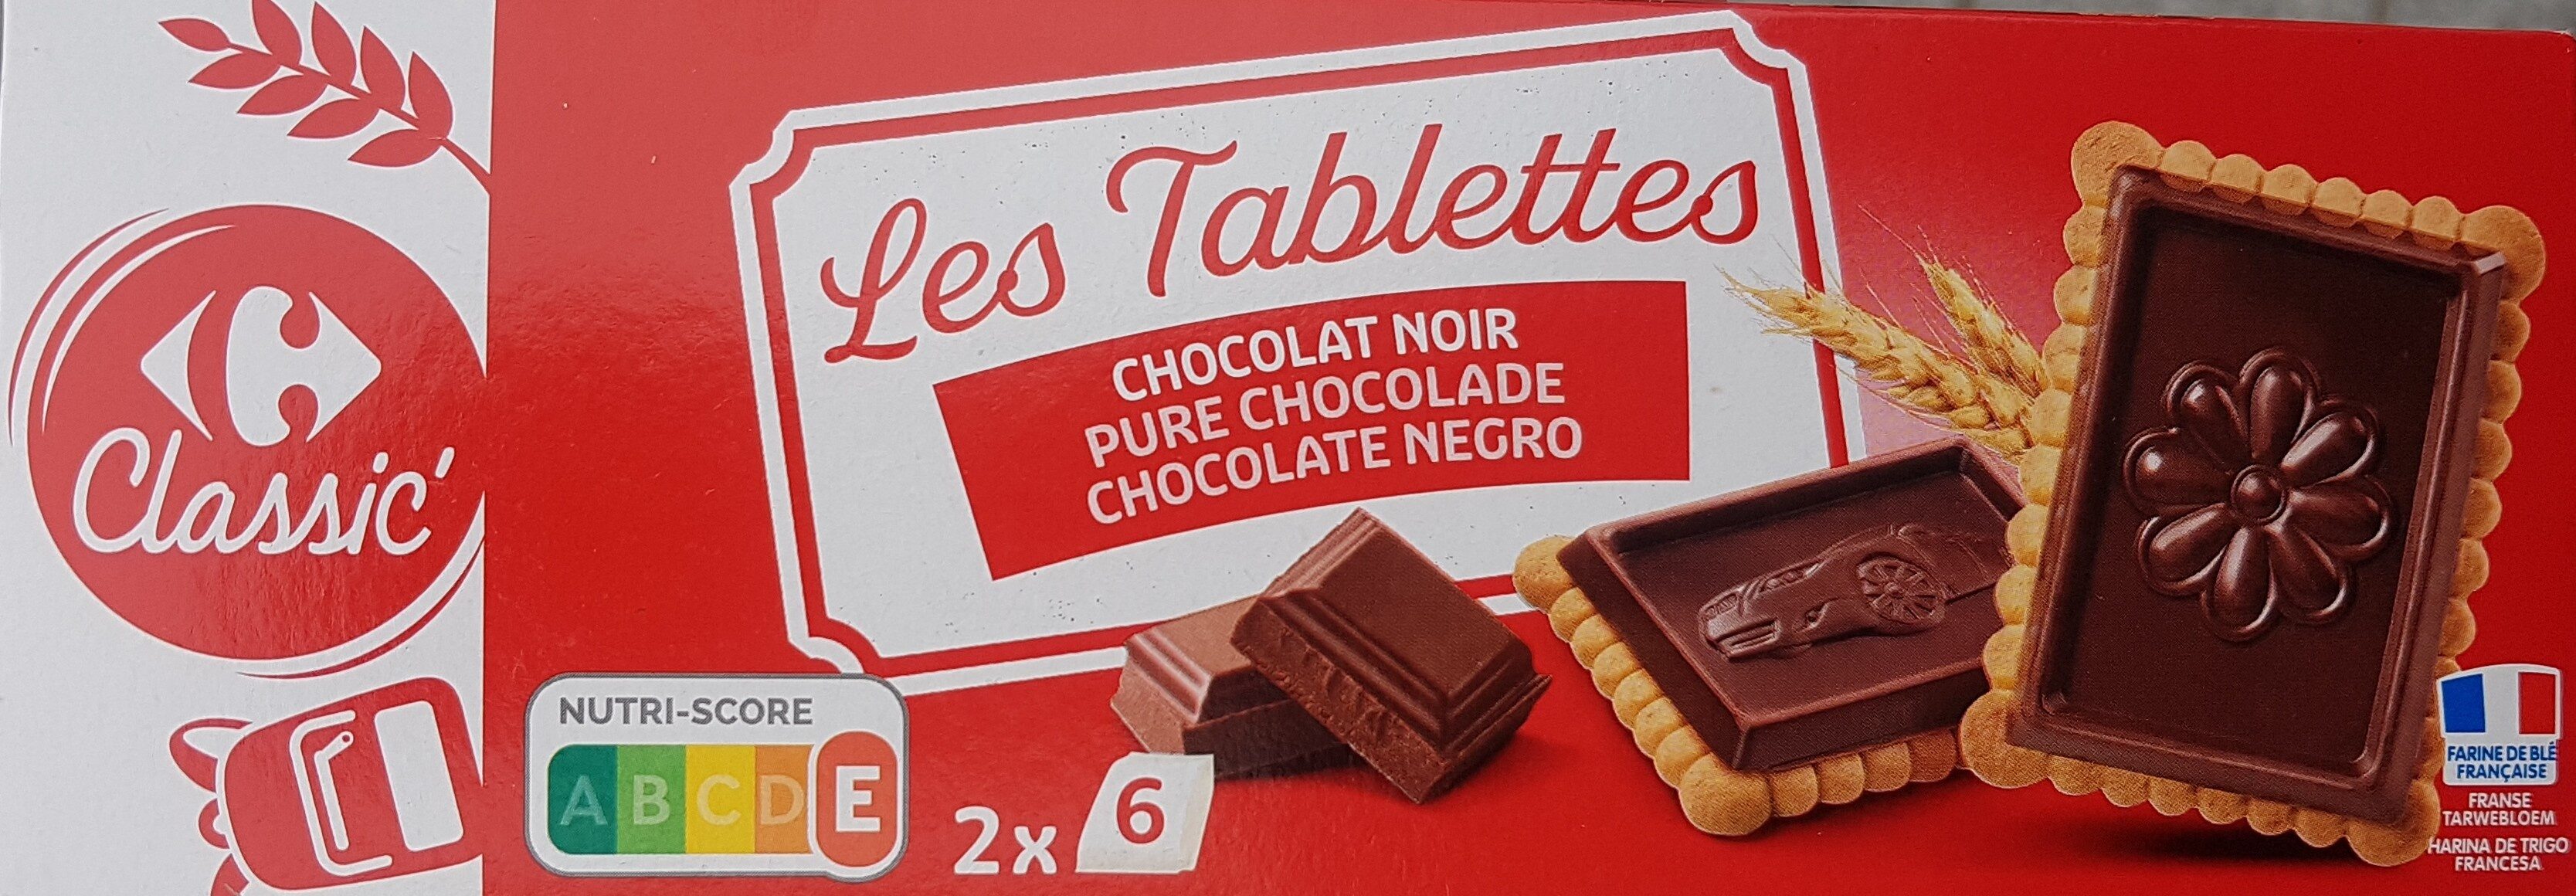 Les Tablettes CHOCOLAT NOIR - Produkt - fr